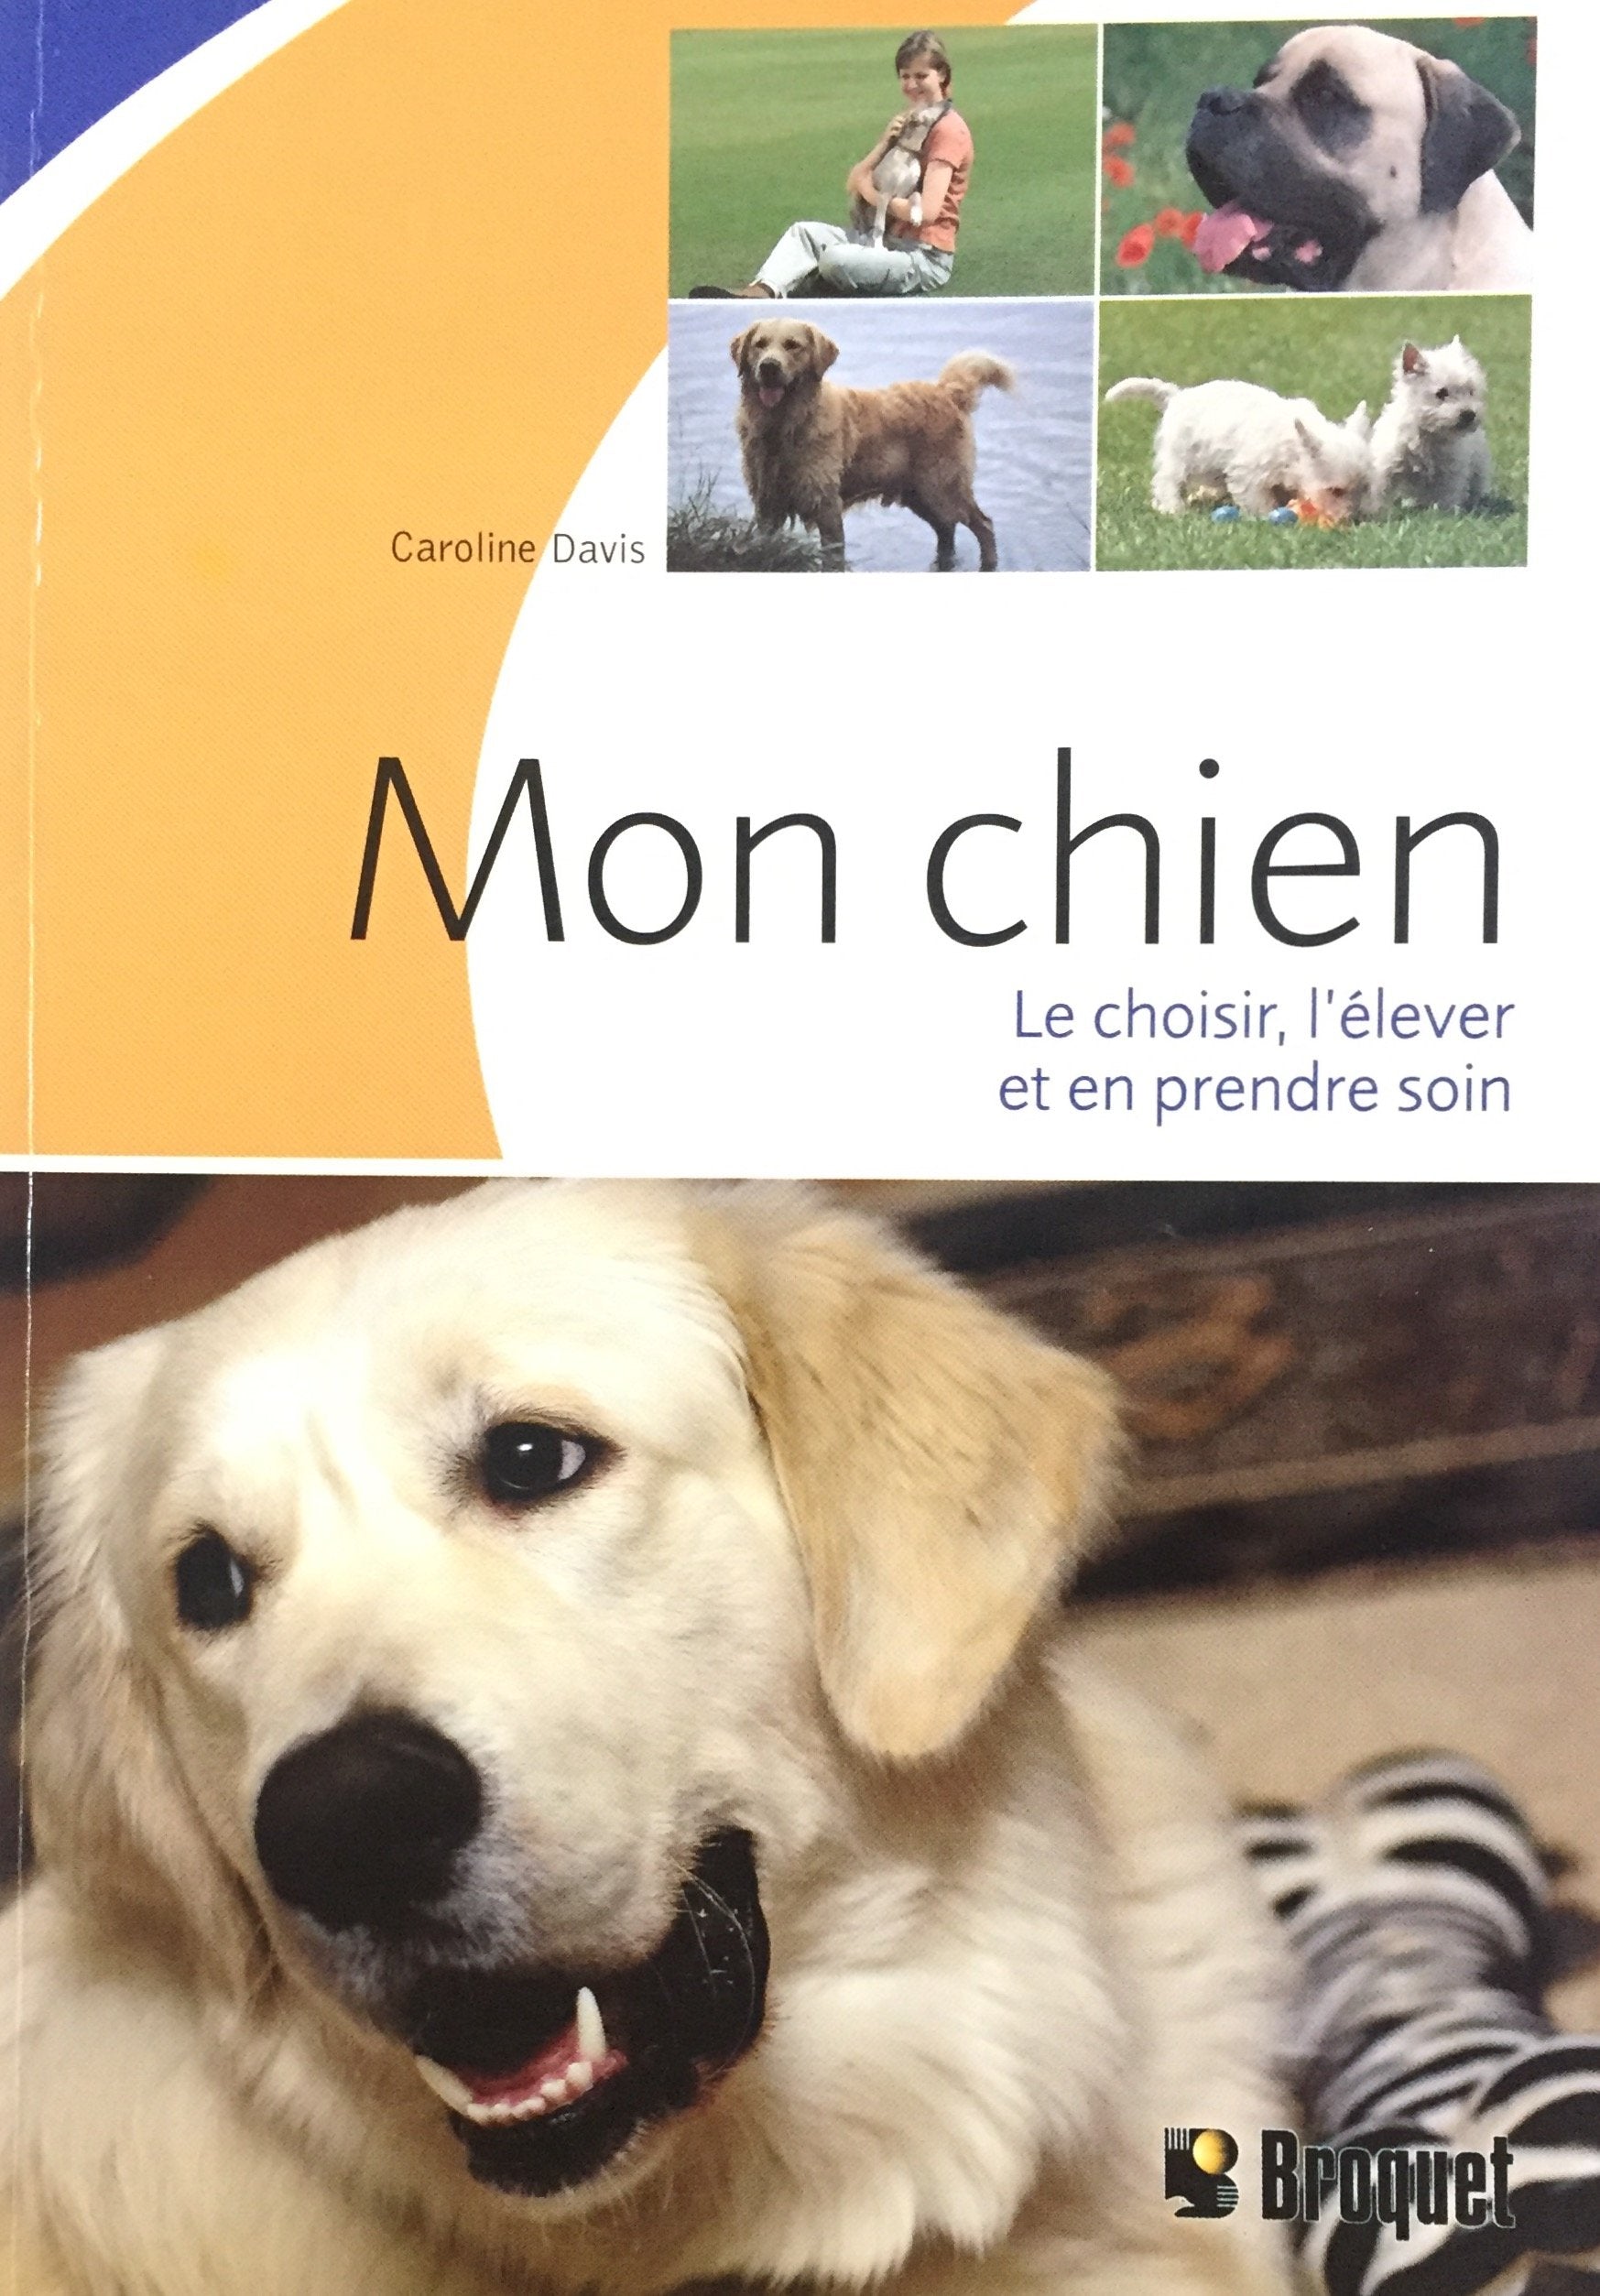 Livre ISBN 2890009335 Mon chien : Le choisir, l'élever et en prendre soin (Caroline Davis)